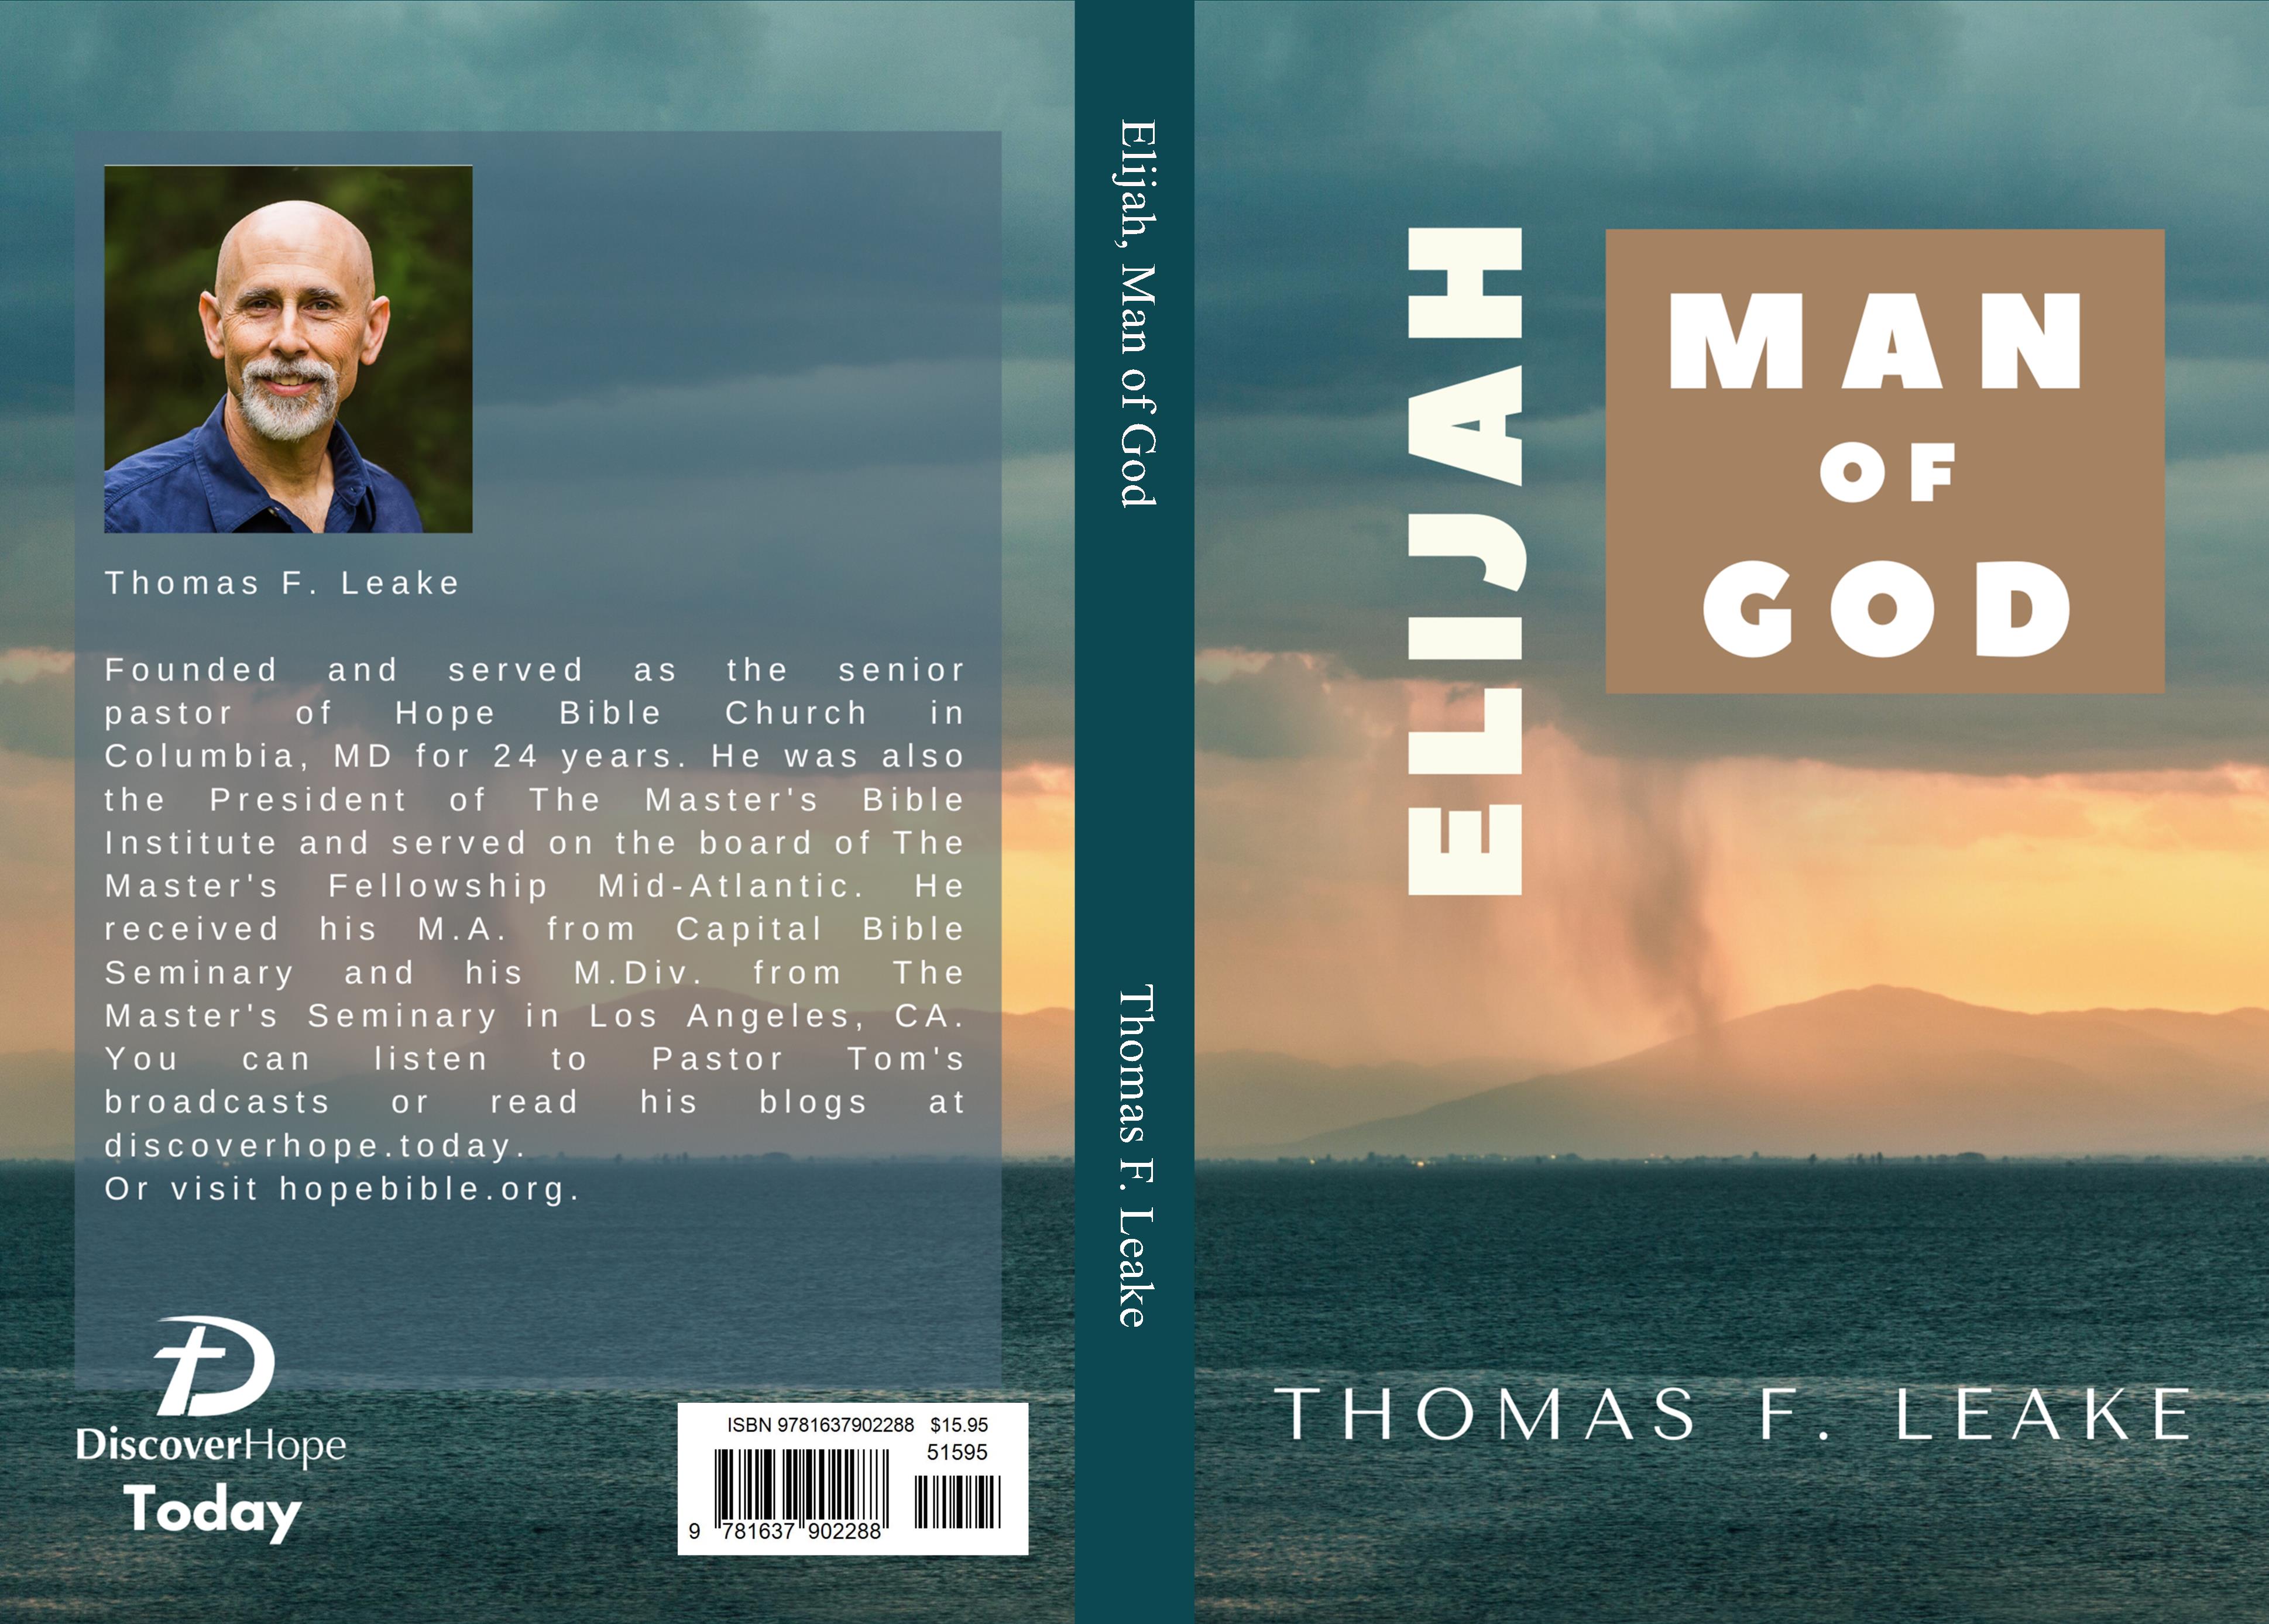 Elijah, Man of God cover image